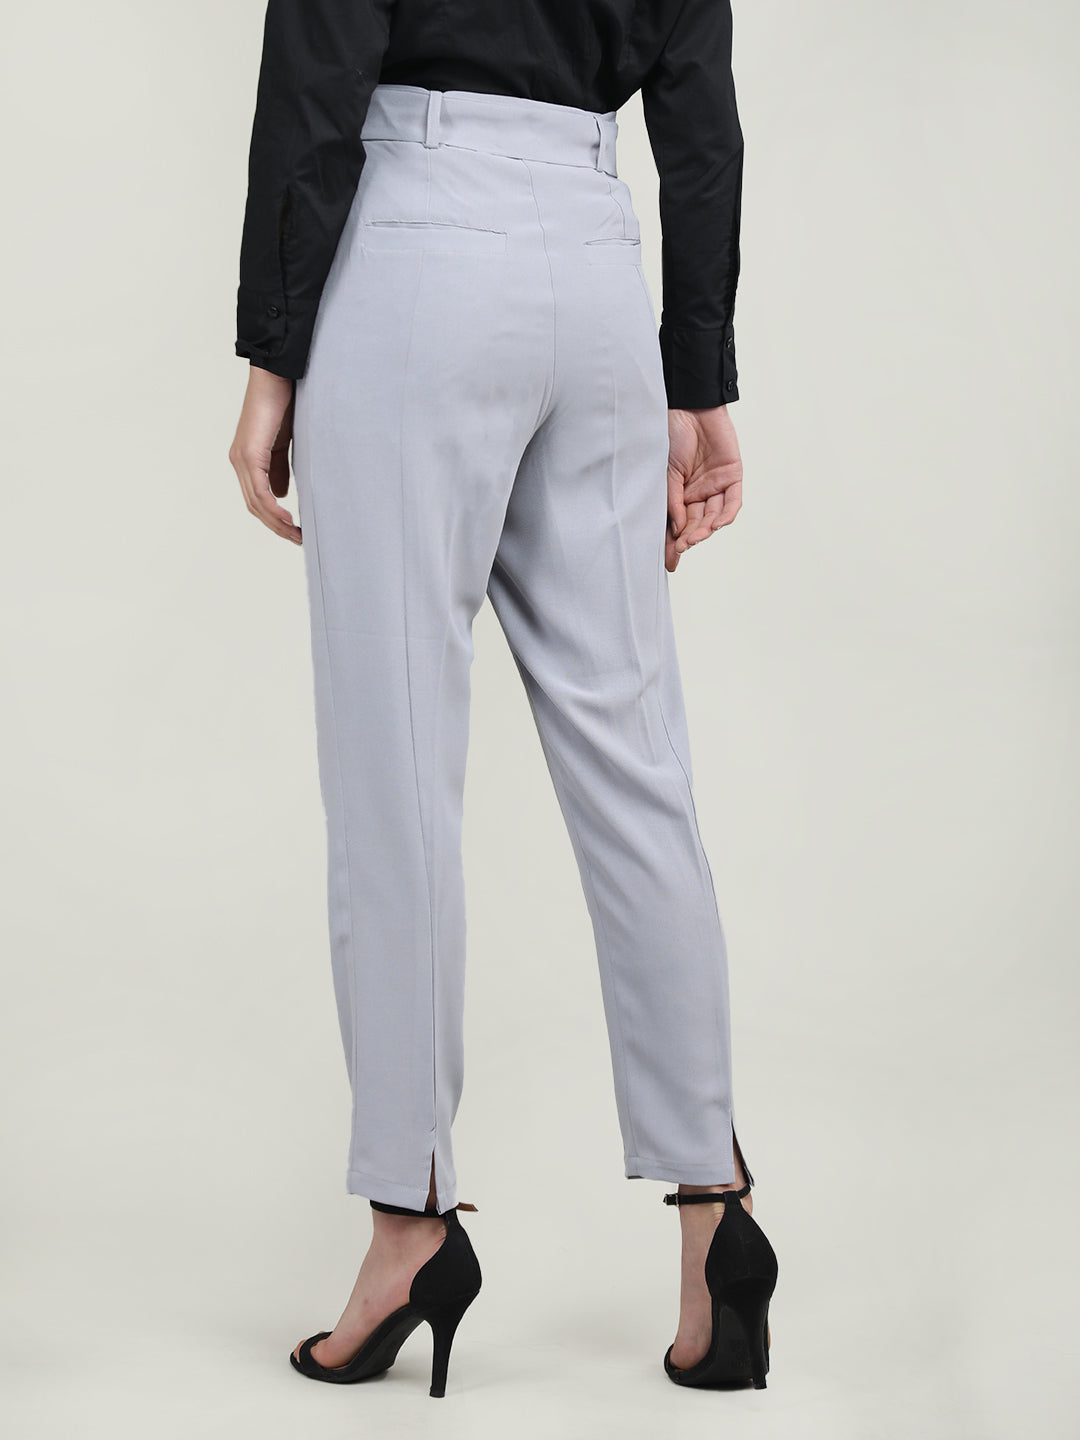 Lavender Pants Suit for Women, Office Pant Suit Set for Women, Blazer Suit  Set Womens, High Waist Straight Pants, Blazer and Trousers Women - Etsy